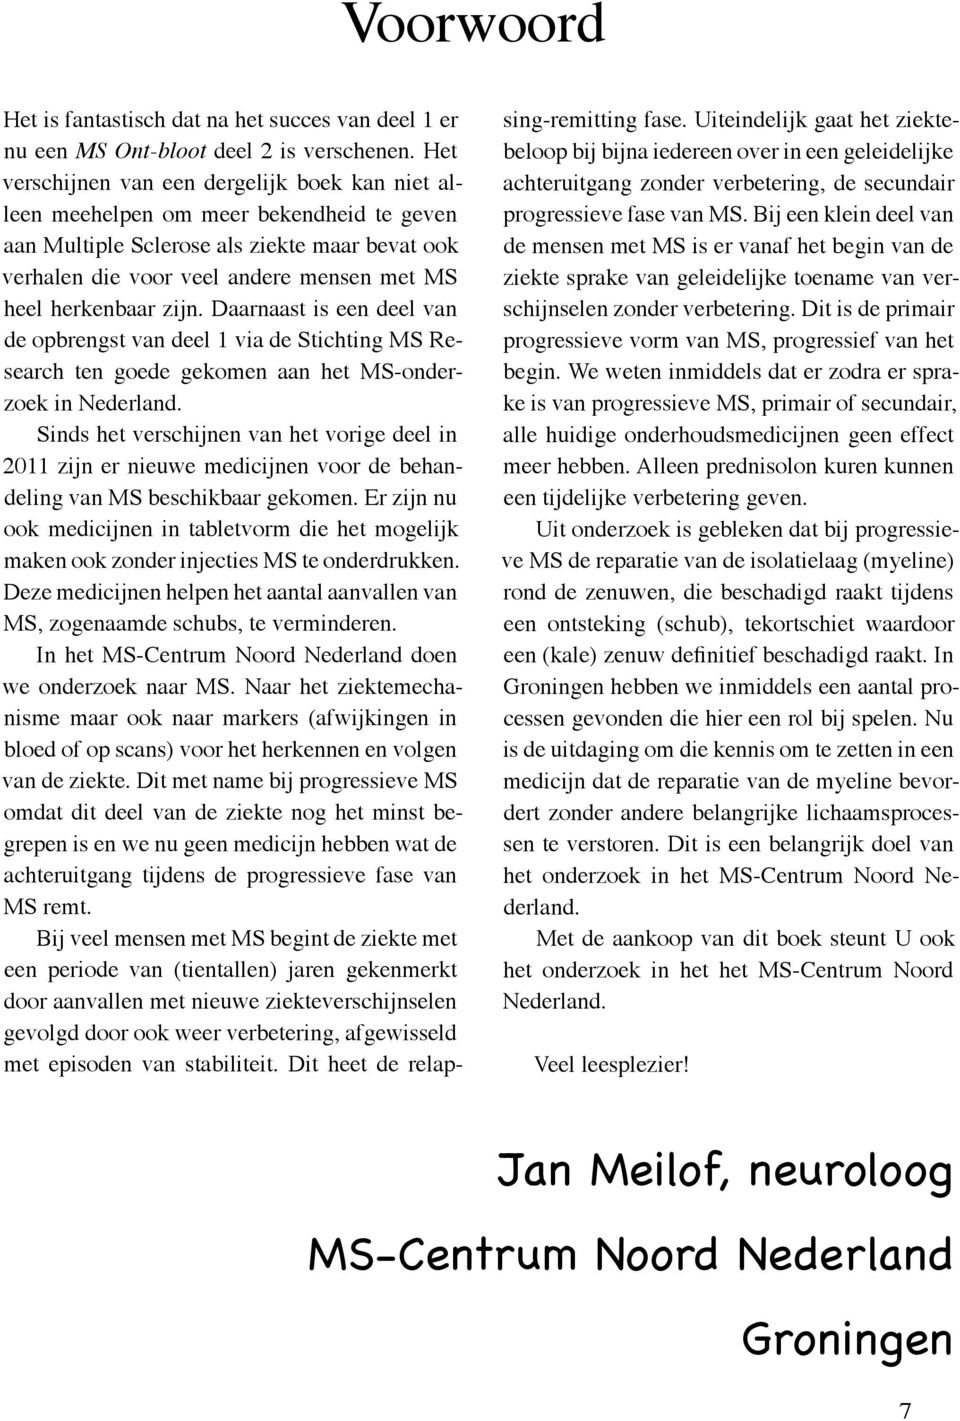 herkenbaar zijn. Daarnaast is een deel van de opbrengst van deel 1 via de Stichting MS Research ten goede gekomen aan het MS-onderzoek in Nederland.